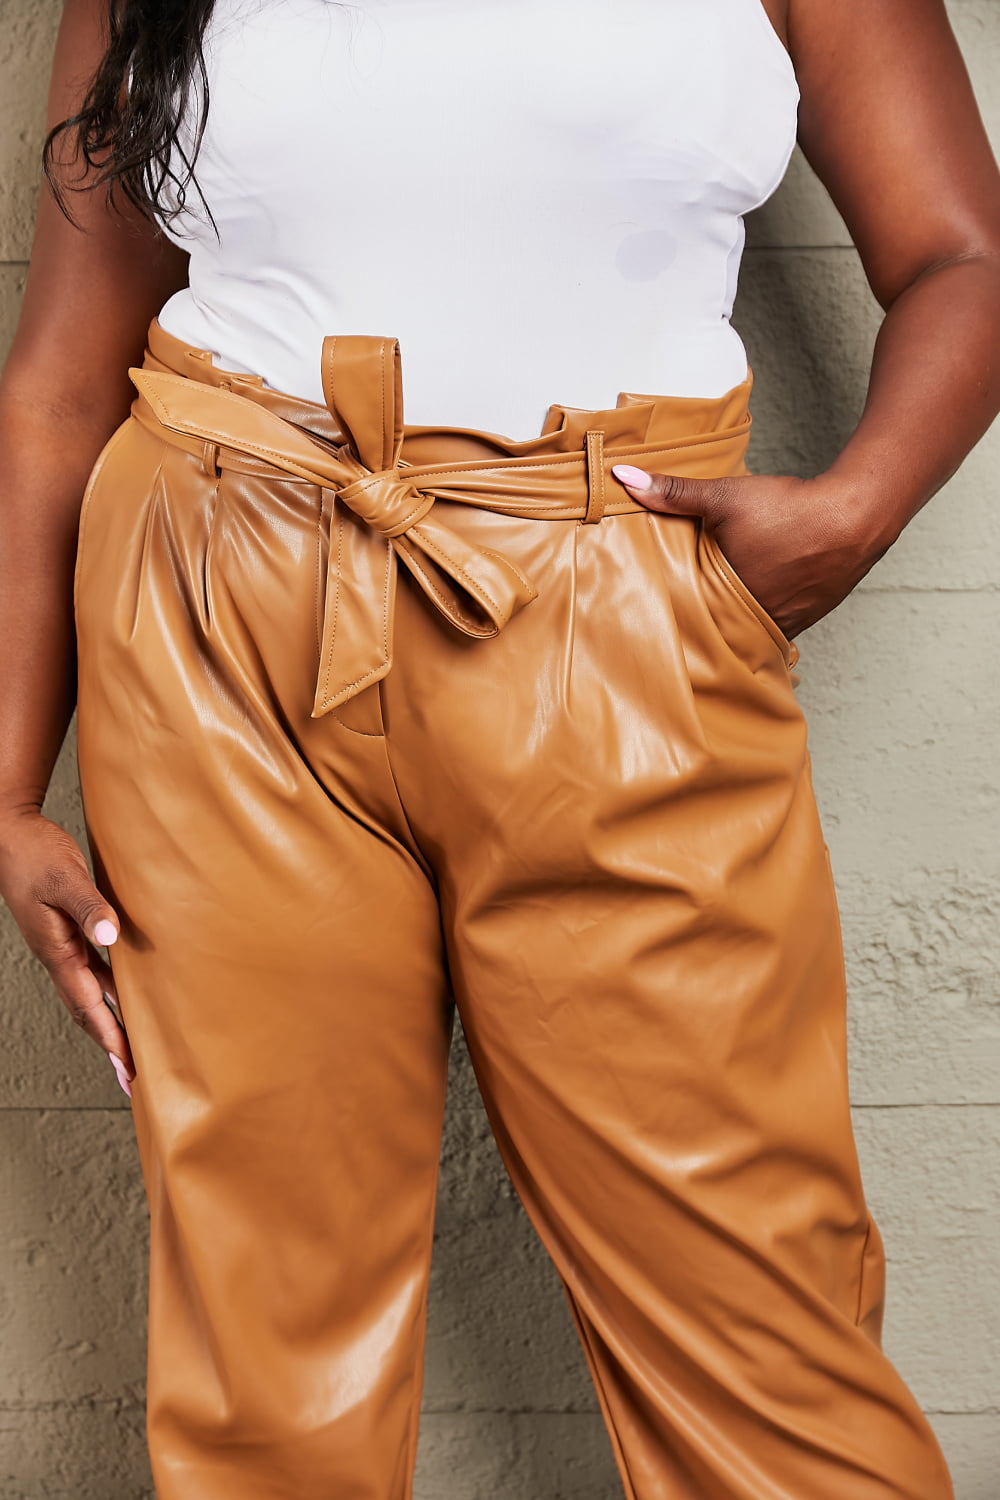 Flaunt Your Stuff Faux Leather Paperbag Waist Pants Ochre Faux Leather Pants by Vim&Vigor | Vim&Vigor Boutique